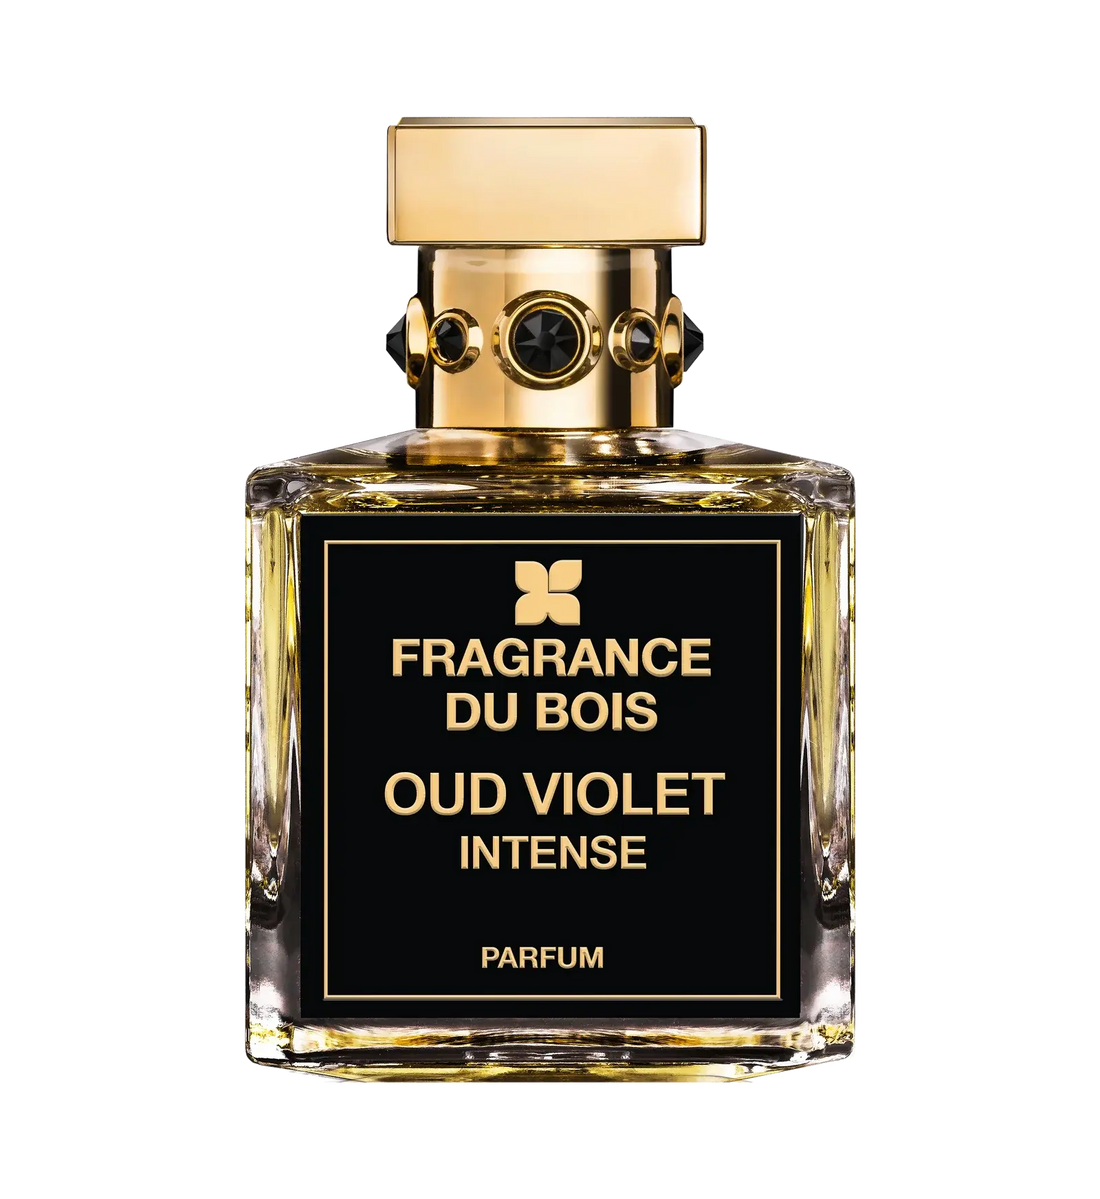 Fragrance du bois Fragrance du Bois Oud Violet Intense Edp – 100 ml